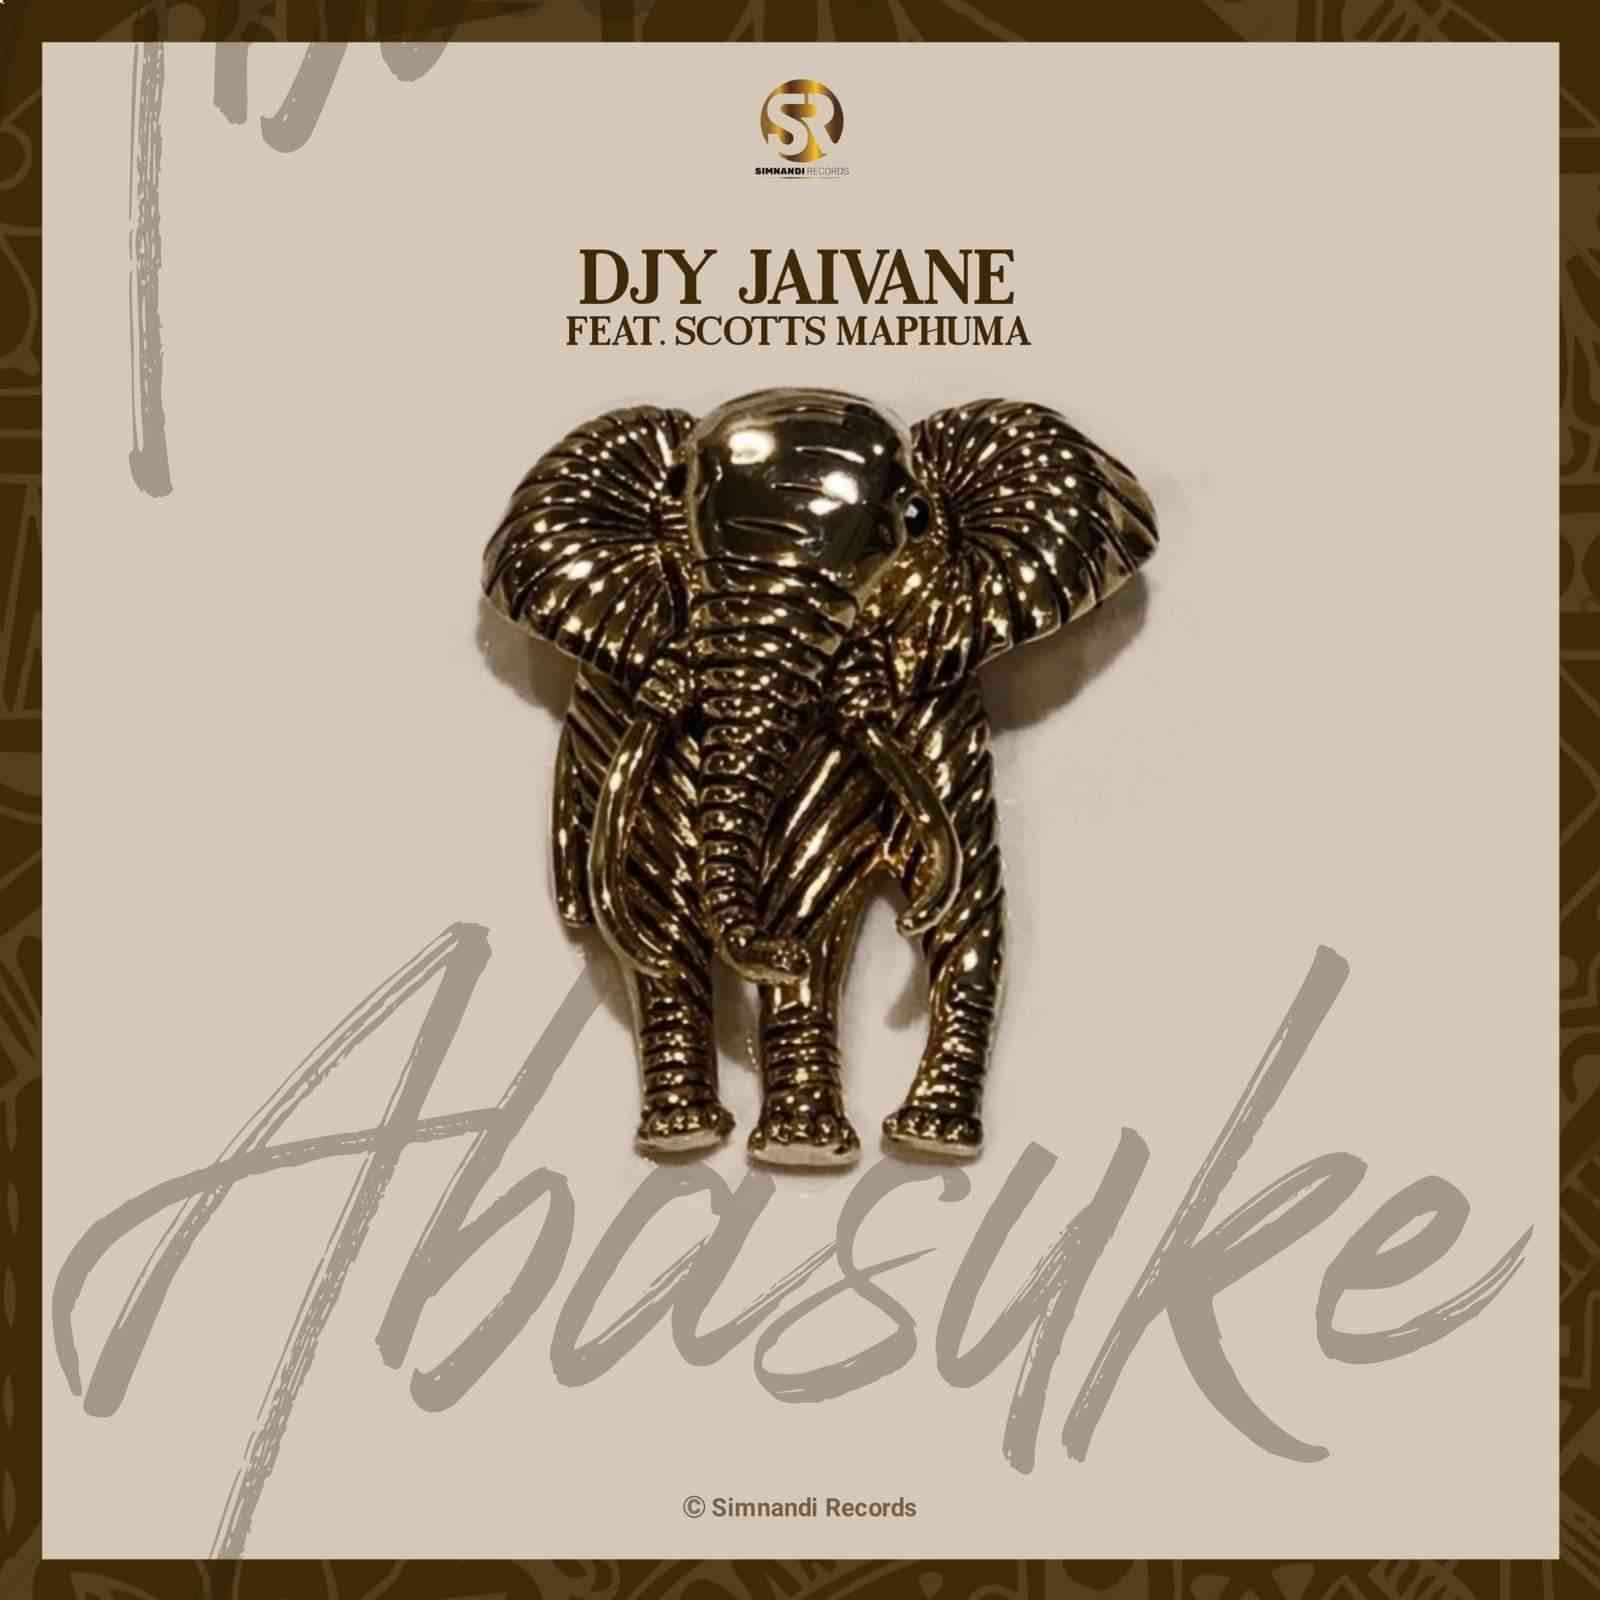 Dj Jaivane Abasuke ft Scotts Maphuma